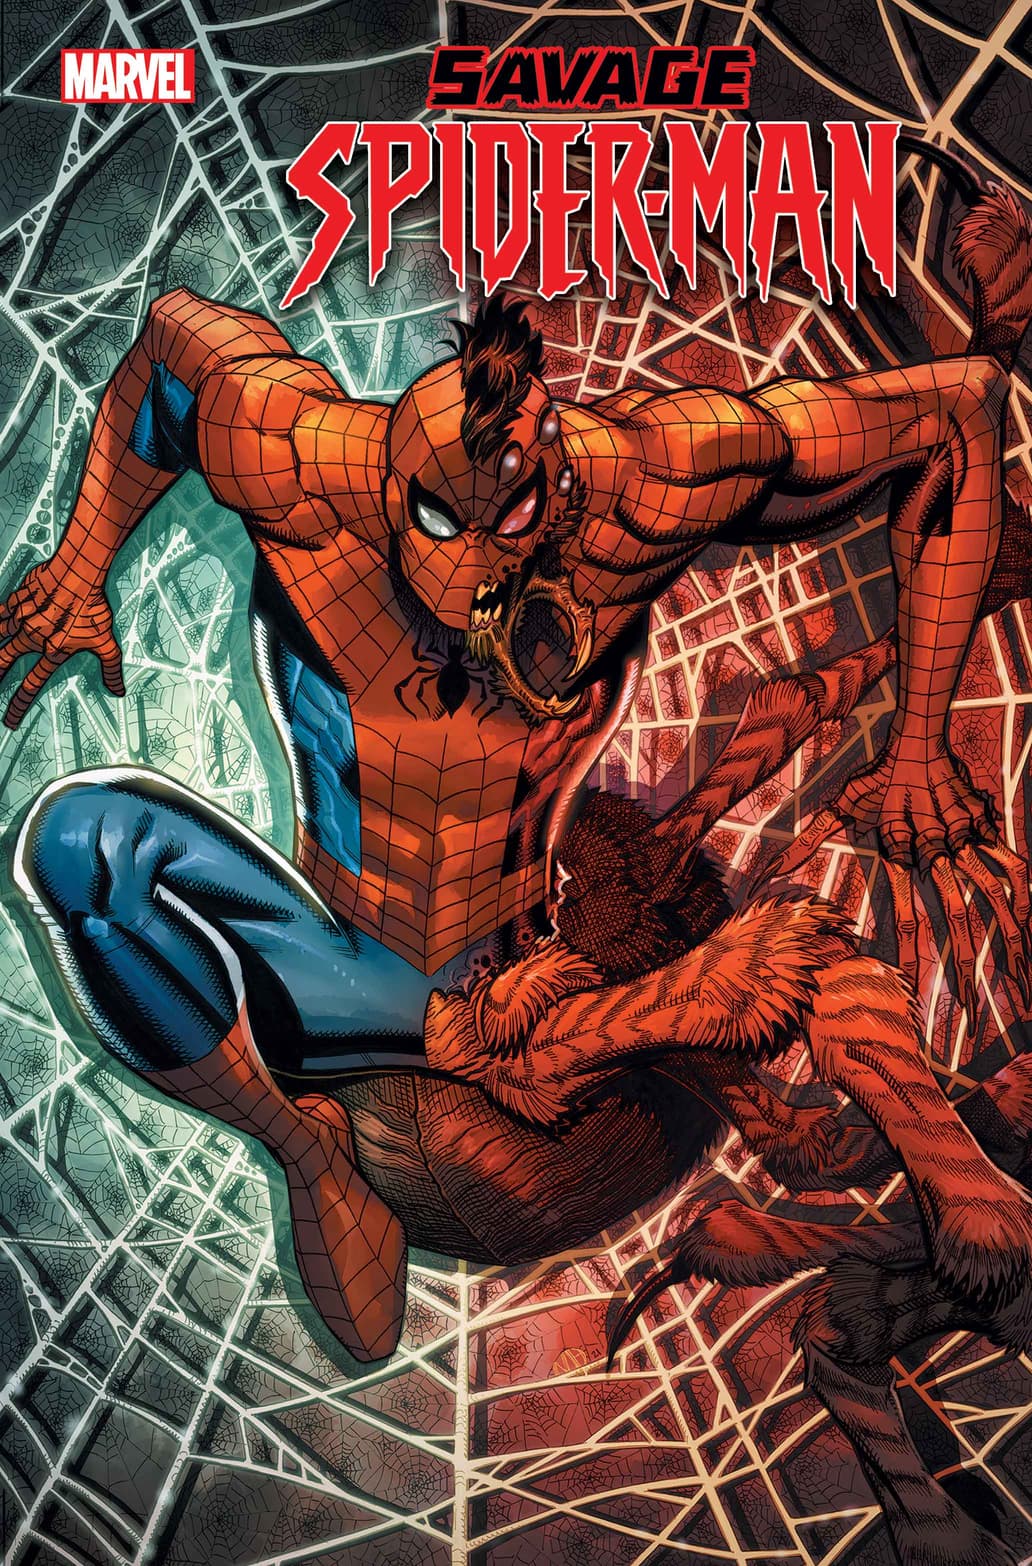 Spider-Man Goes Wild in 'Savage Spider-Man,' A Thrilling New ...